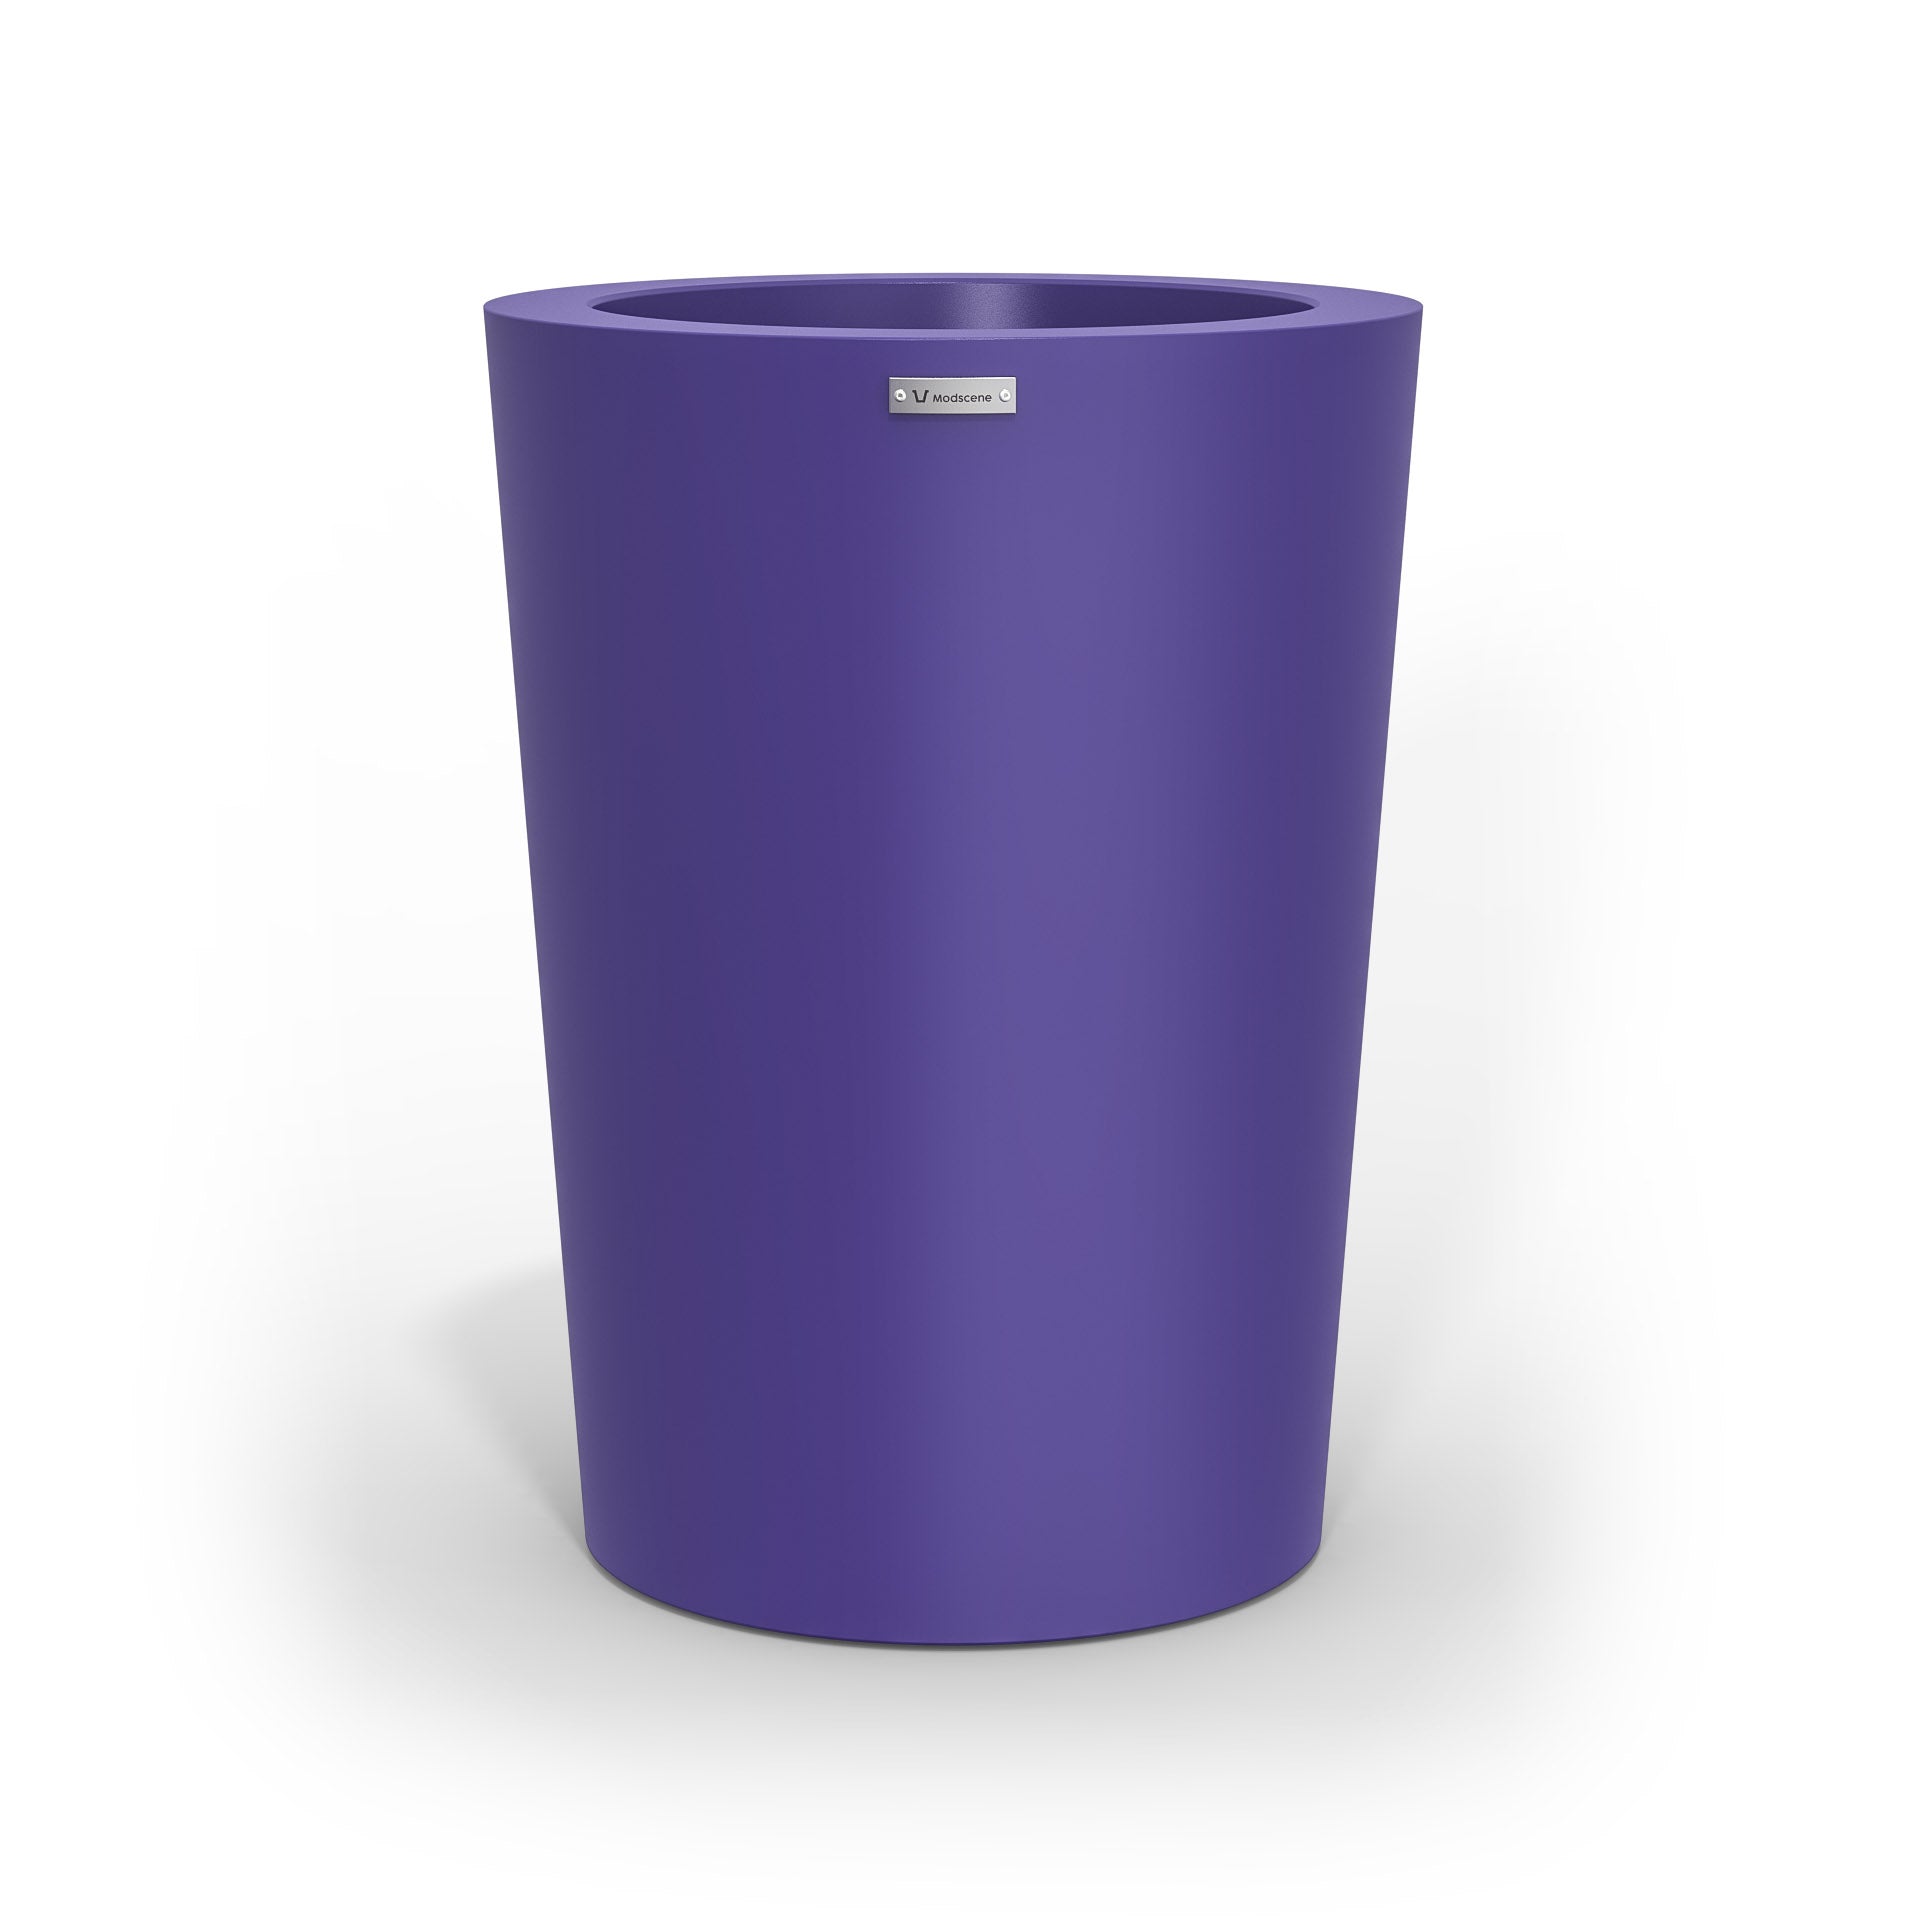 A modern style planter pot in purple. Made by Modscene NZ.